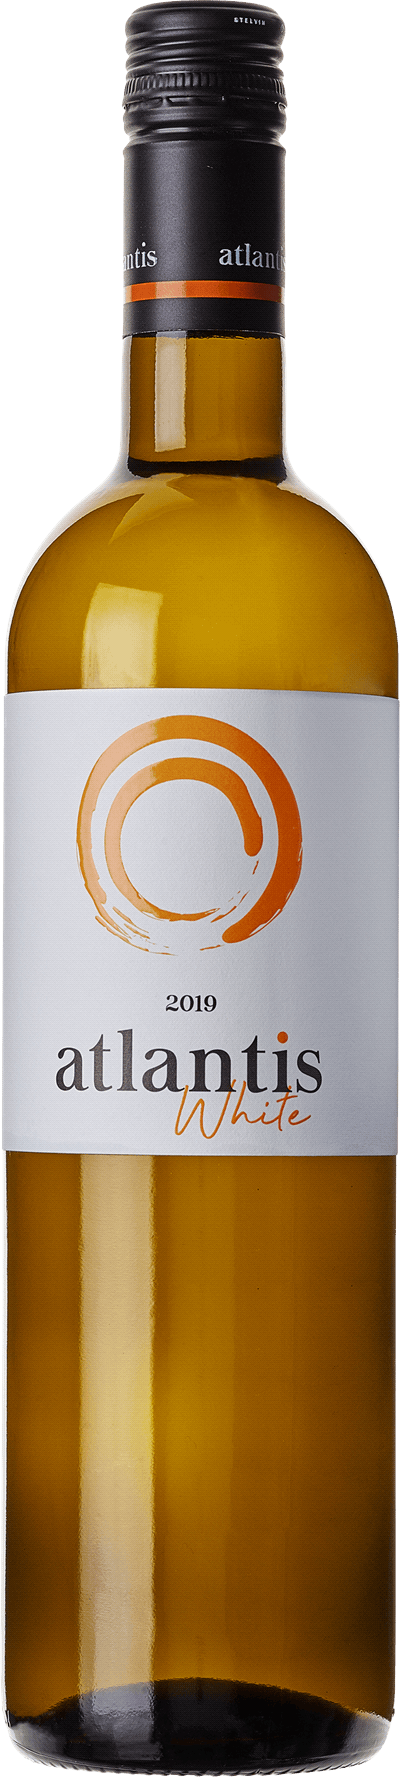 atlantis-white_wine-table